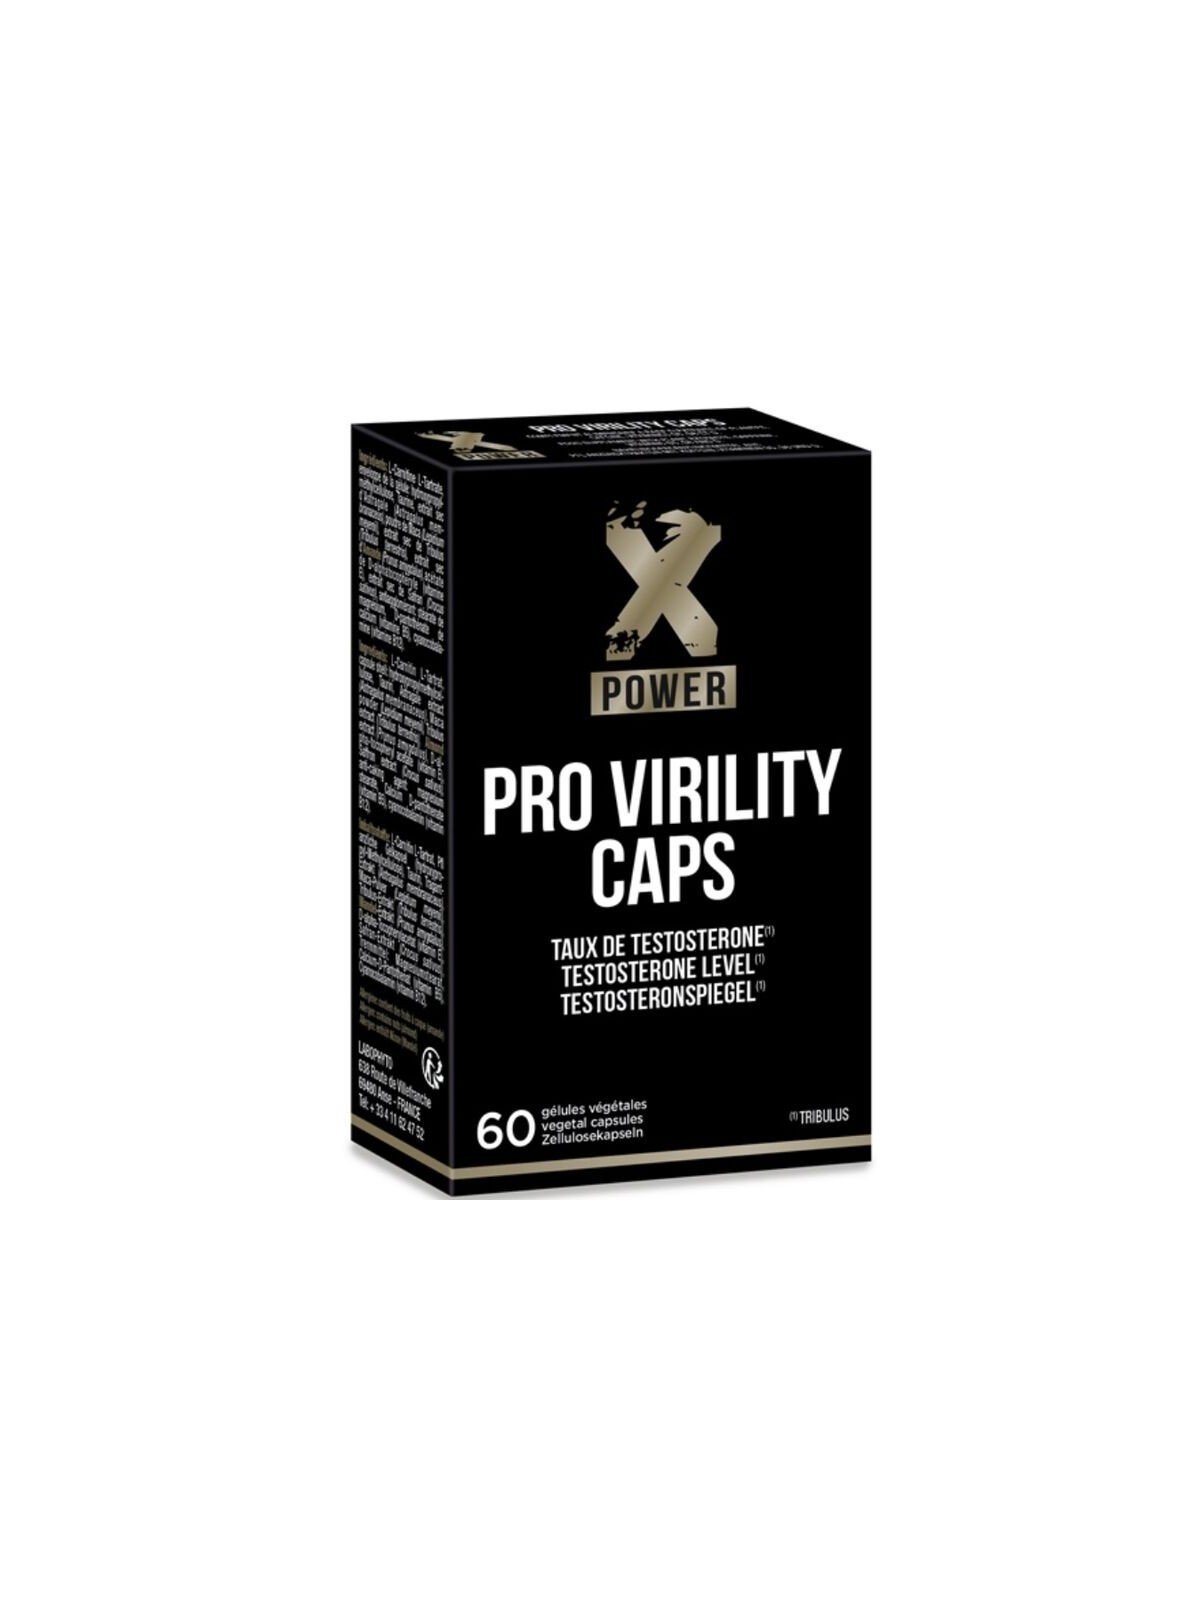 Xpower Pro Virility Cápsulas Vitalidad & Virilidad 60 uds - Comprar Potenciador erección Xpower - Potenciadores de erección (1)